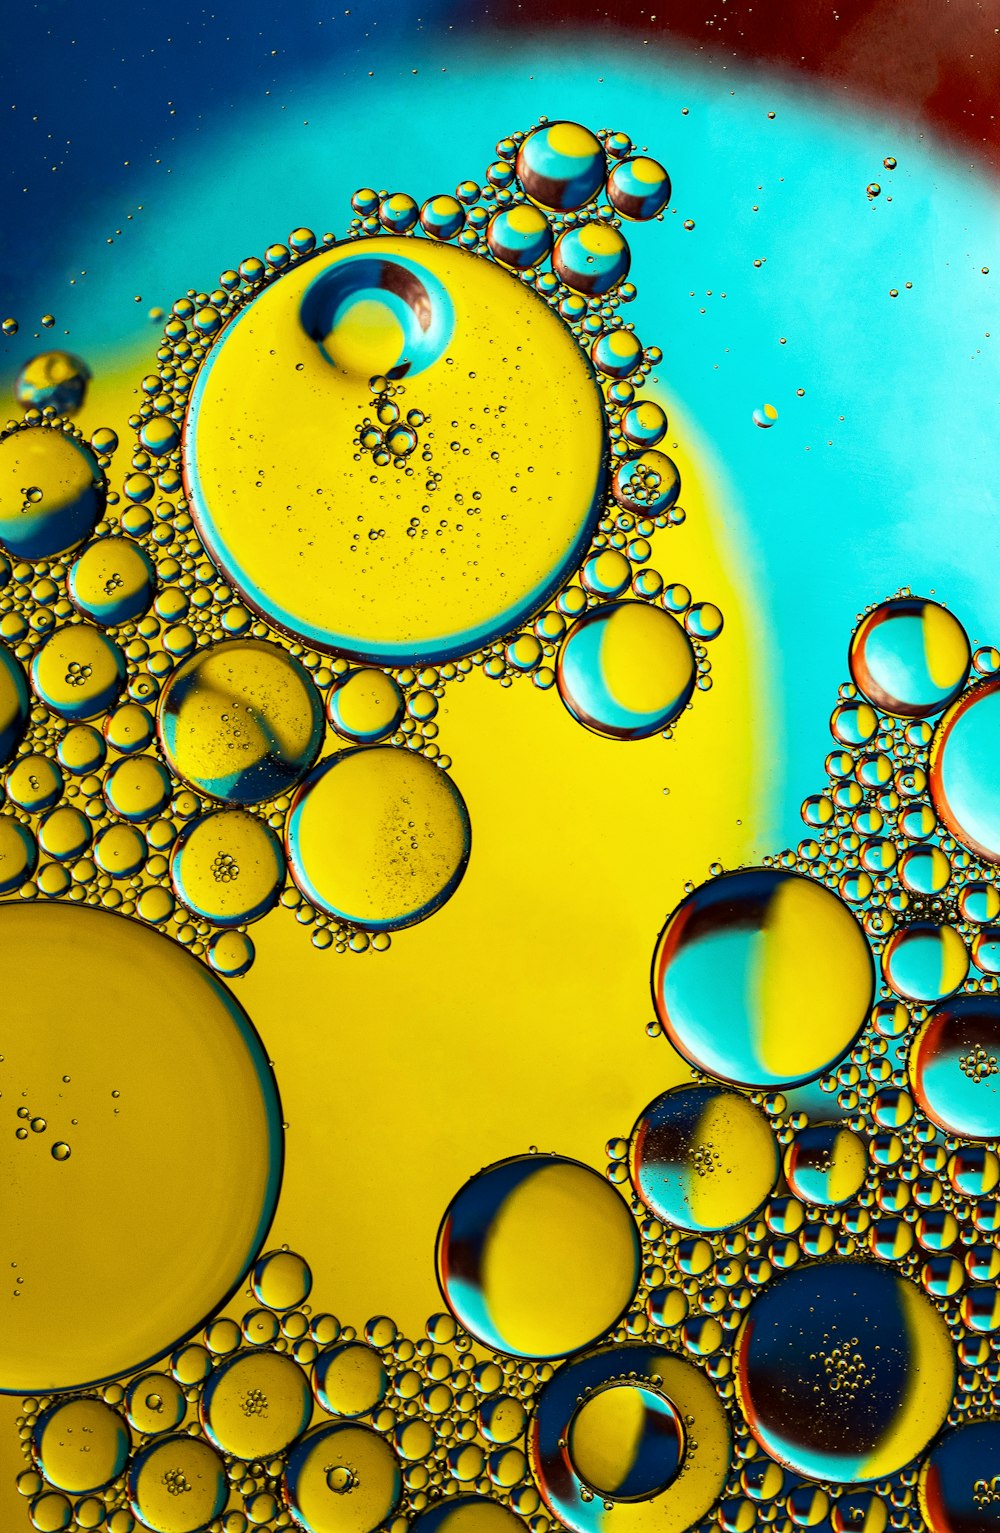 Un primer plano de un líquido amarillo y azul